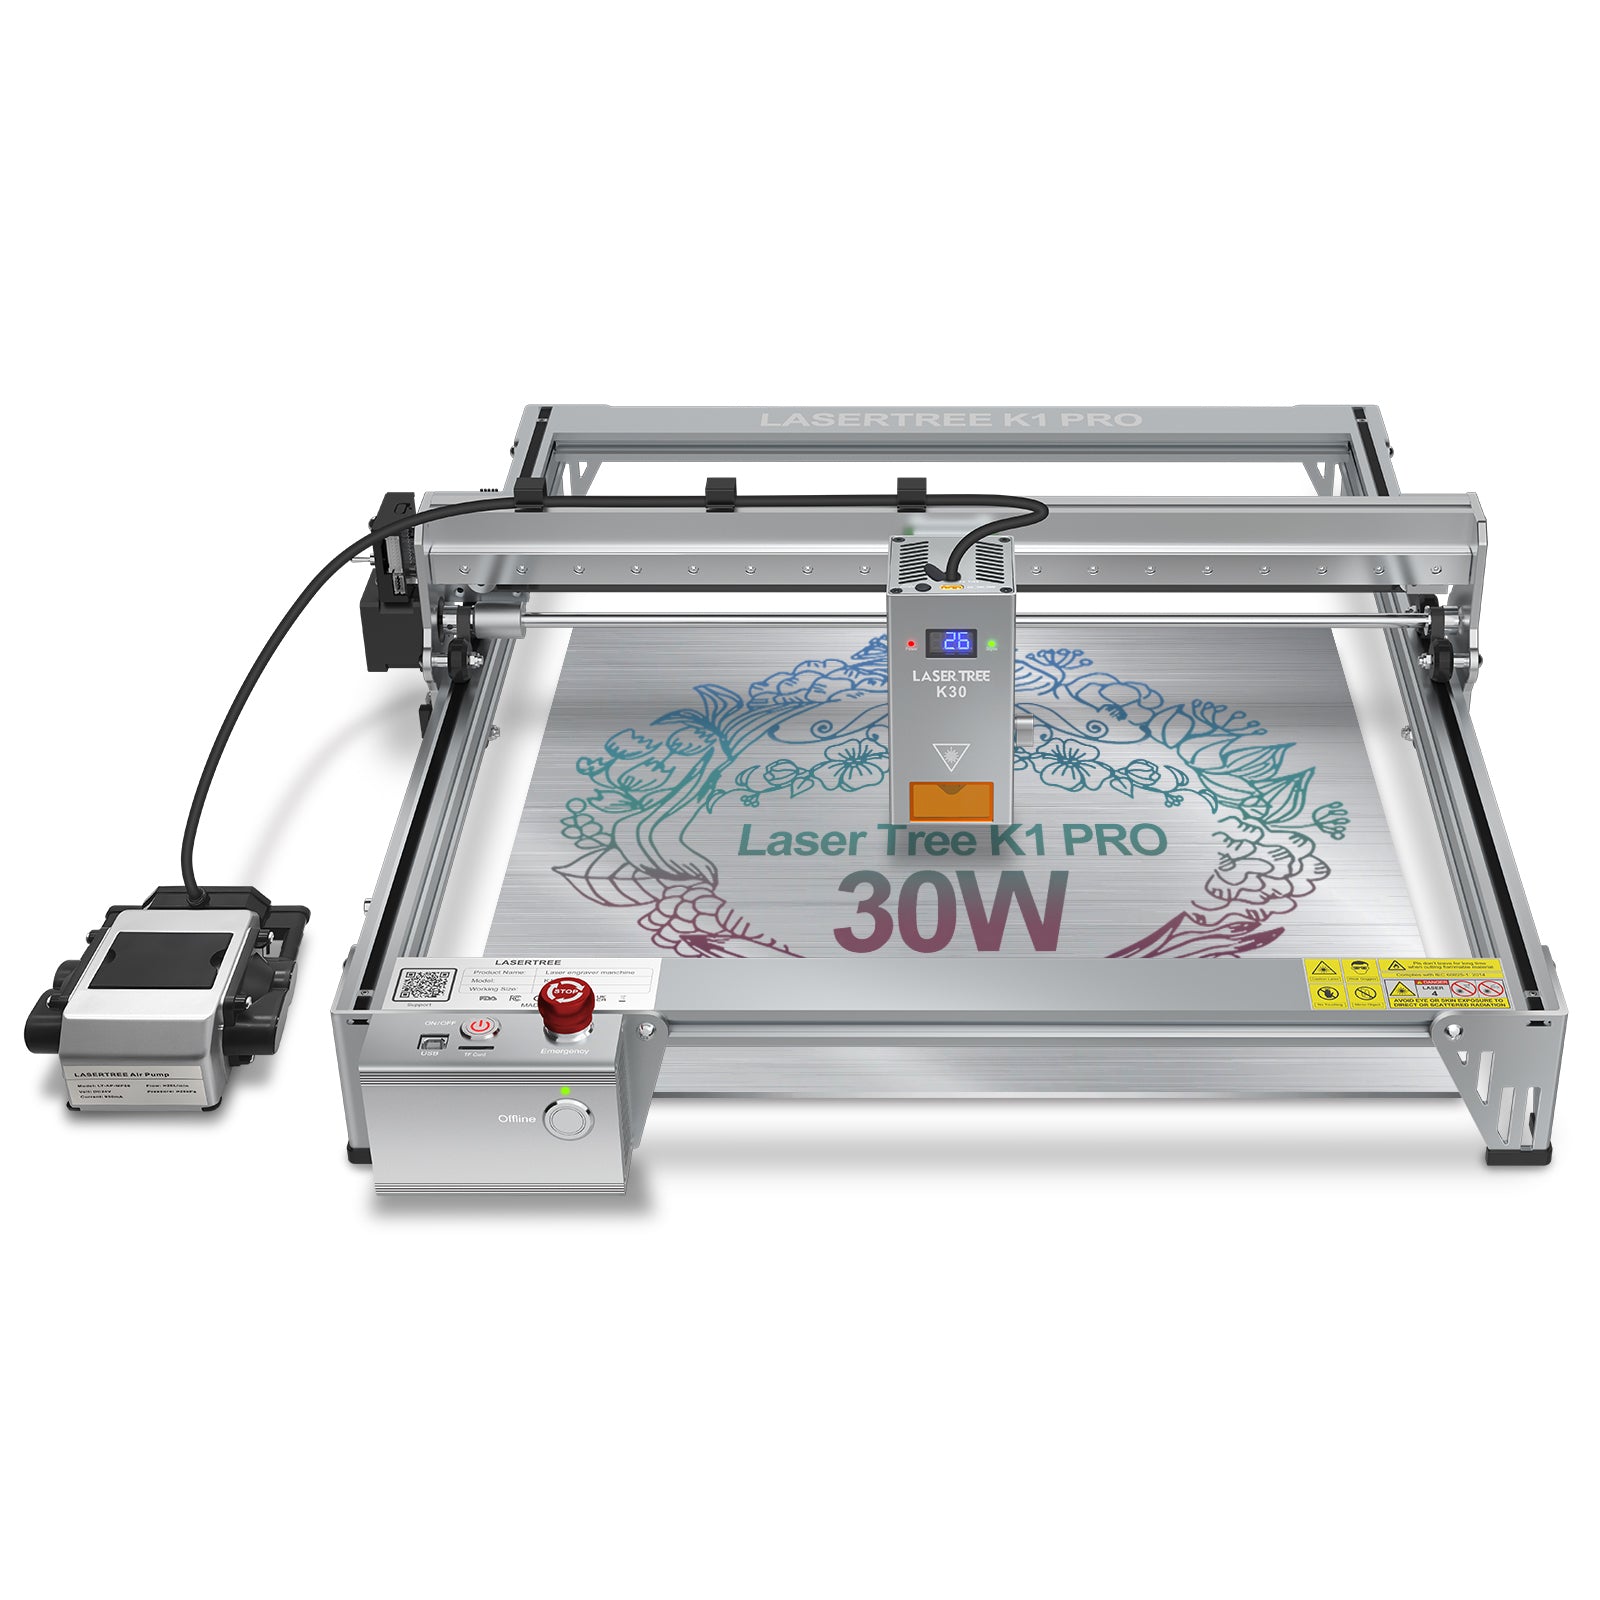 Laser Tree K1 Pro 30W/40W Laser Cutting & Engraving Machine